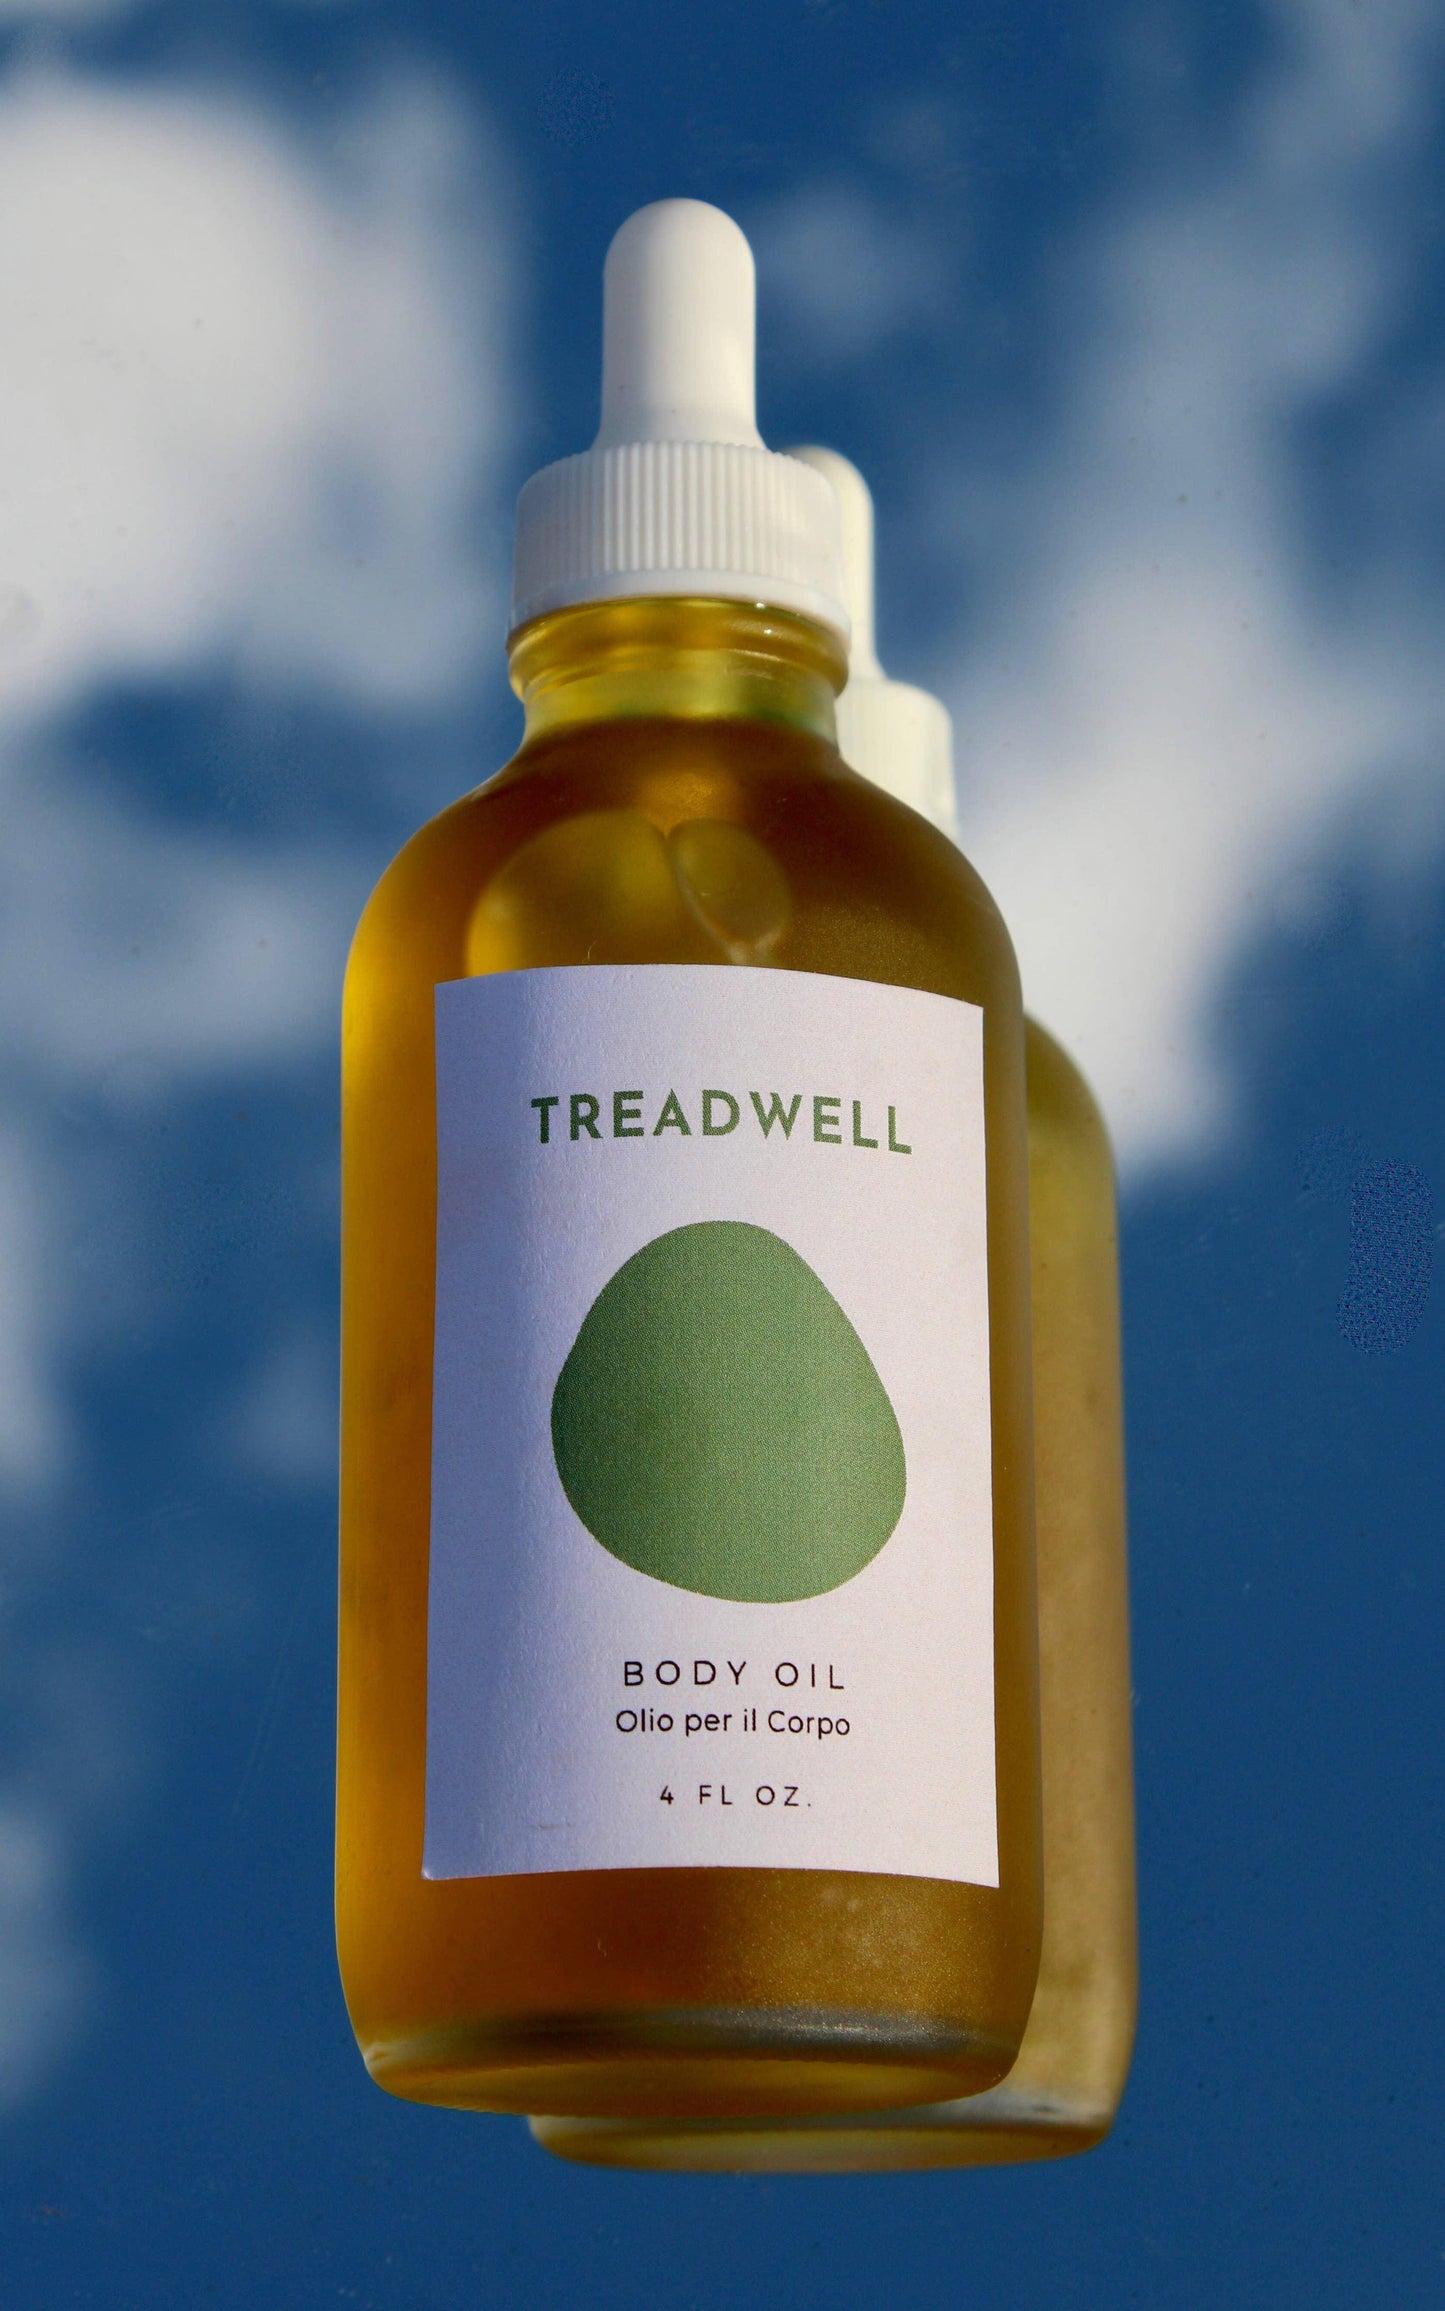 Body Oil, 4 fl oz by Treadwell - Haven